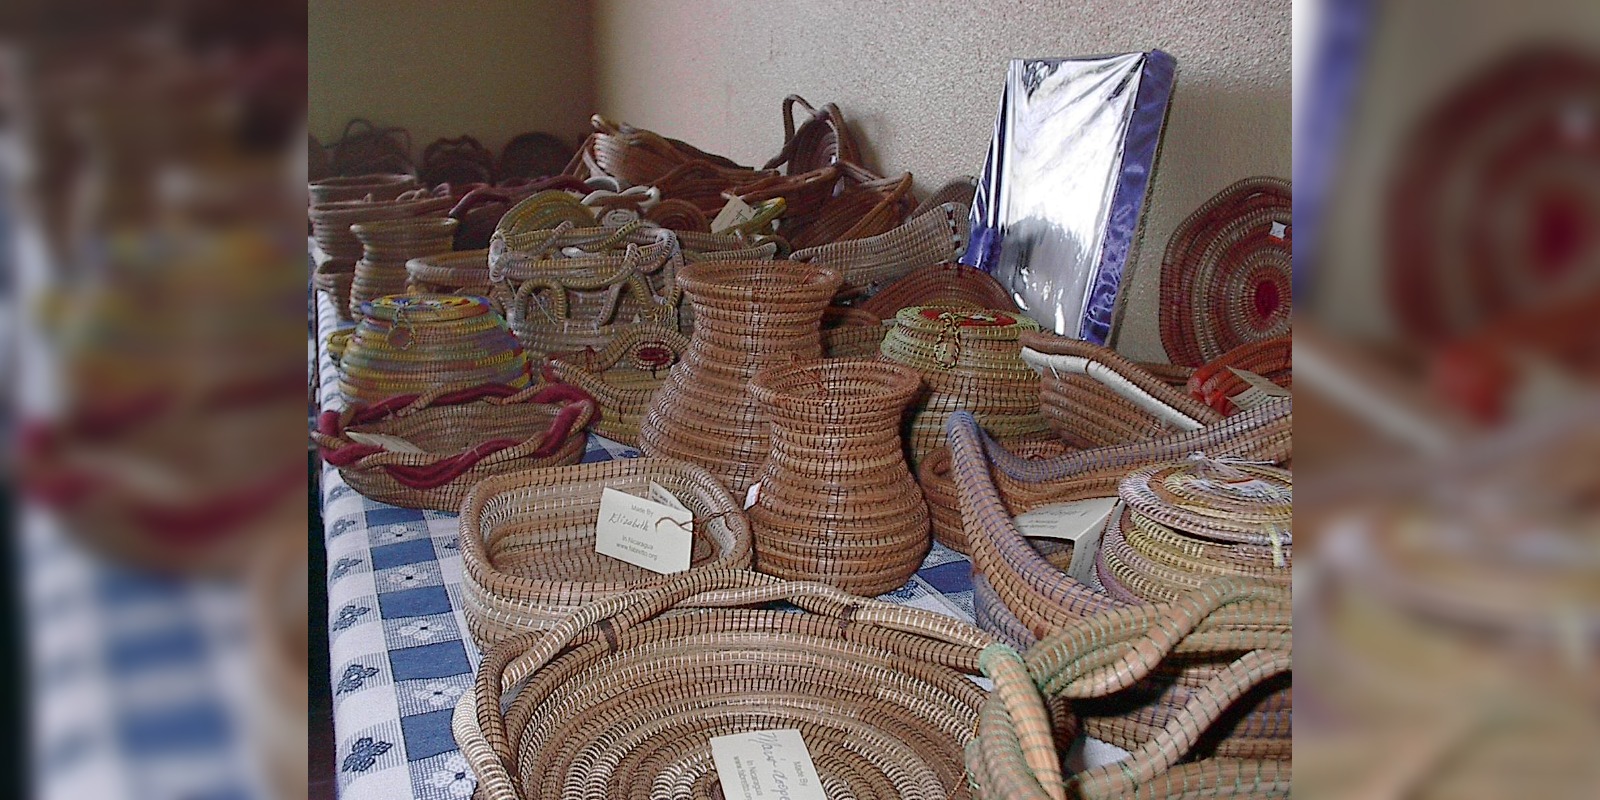 Artesanía elaborada en acícula de pino por mujeres indígenas de las comunidades de Madriz.